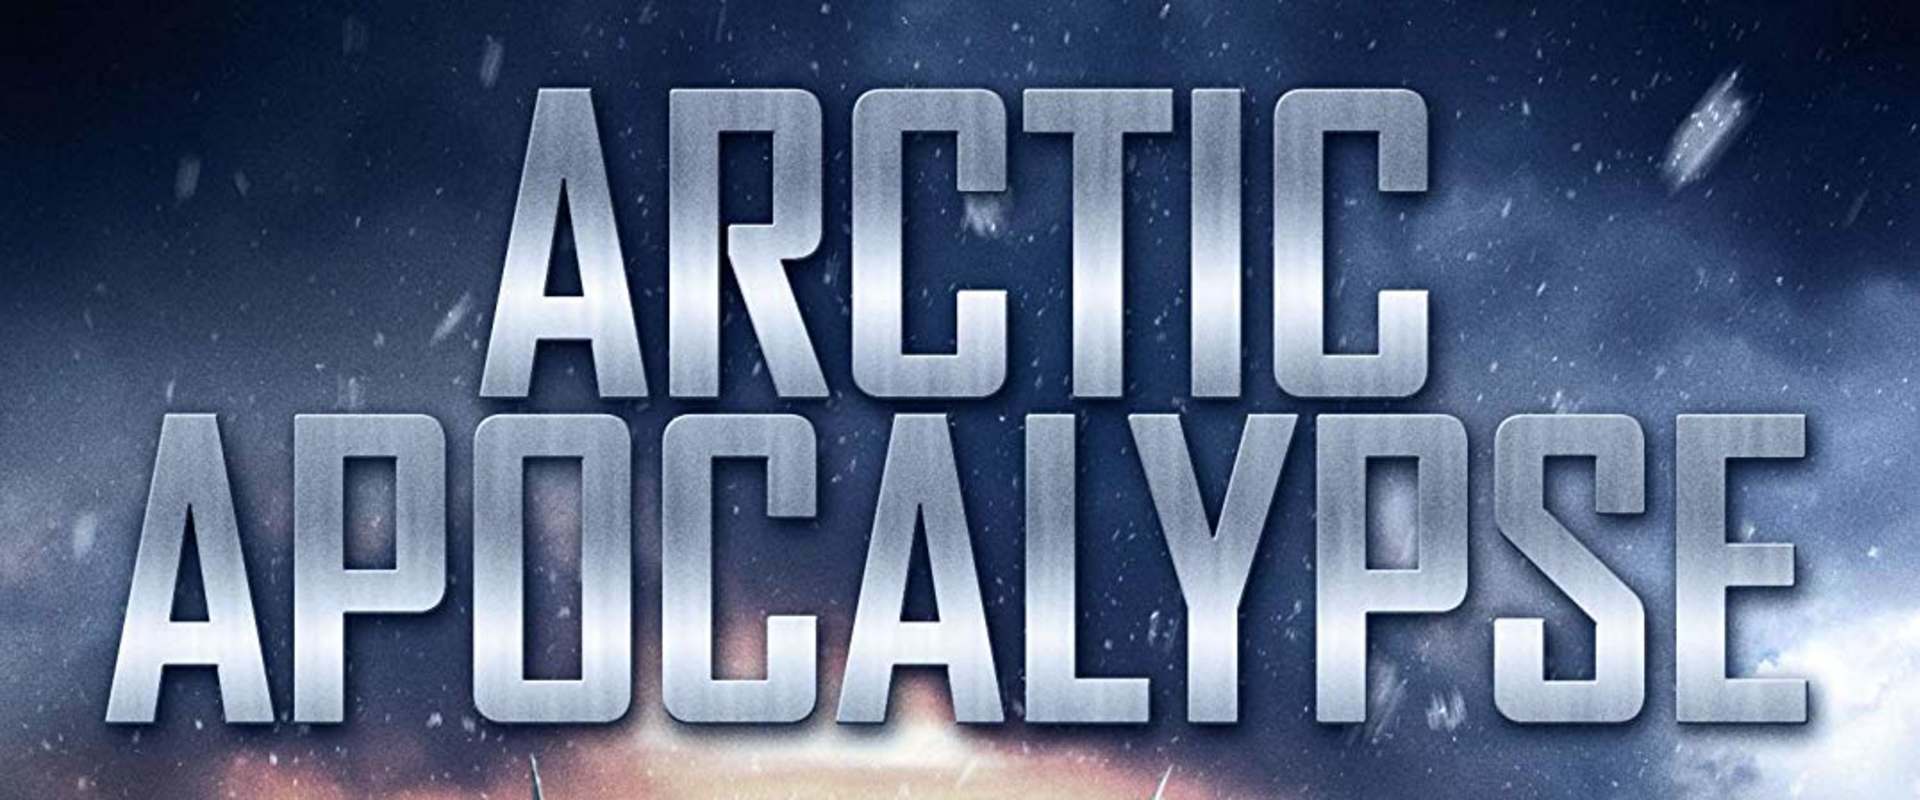 Arctic Apocalypse background 2